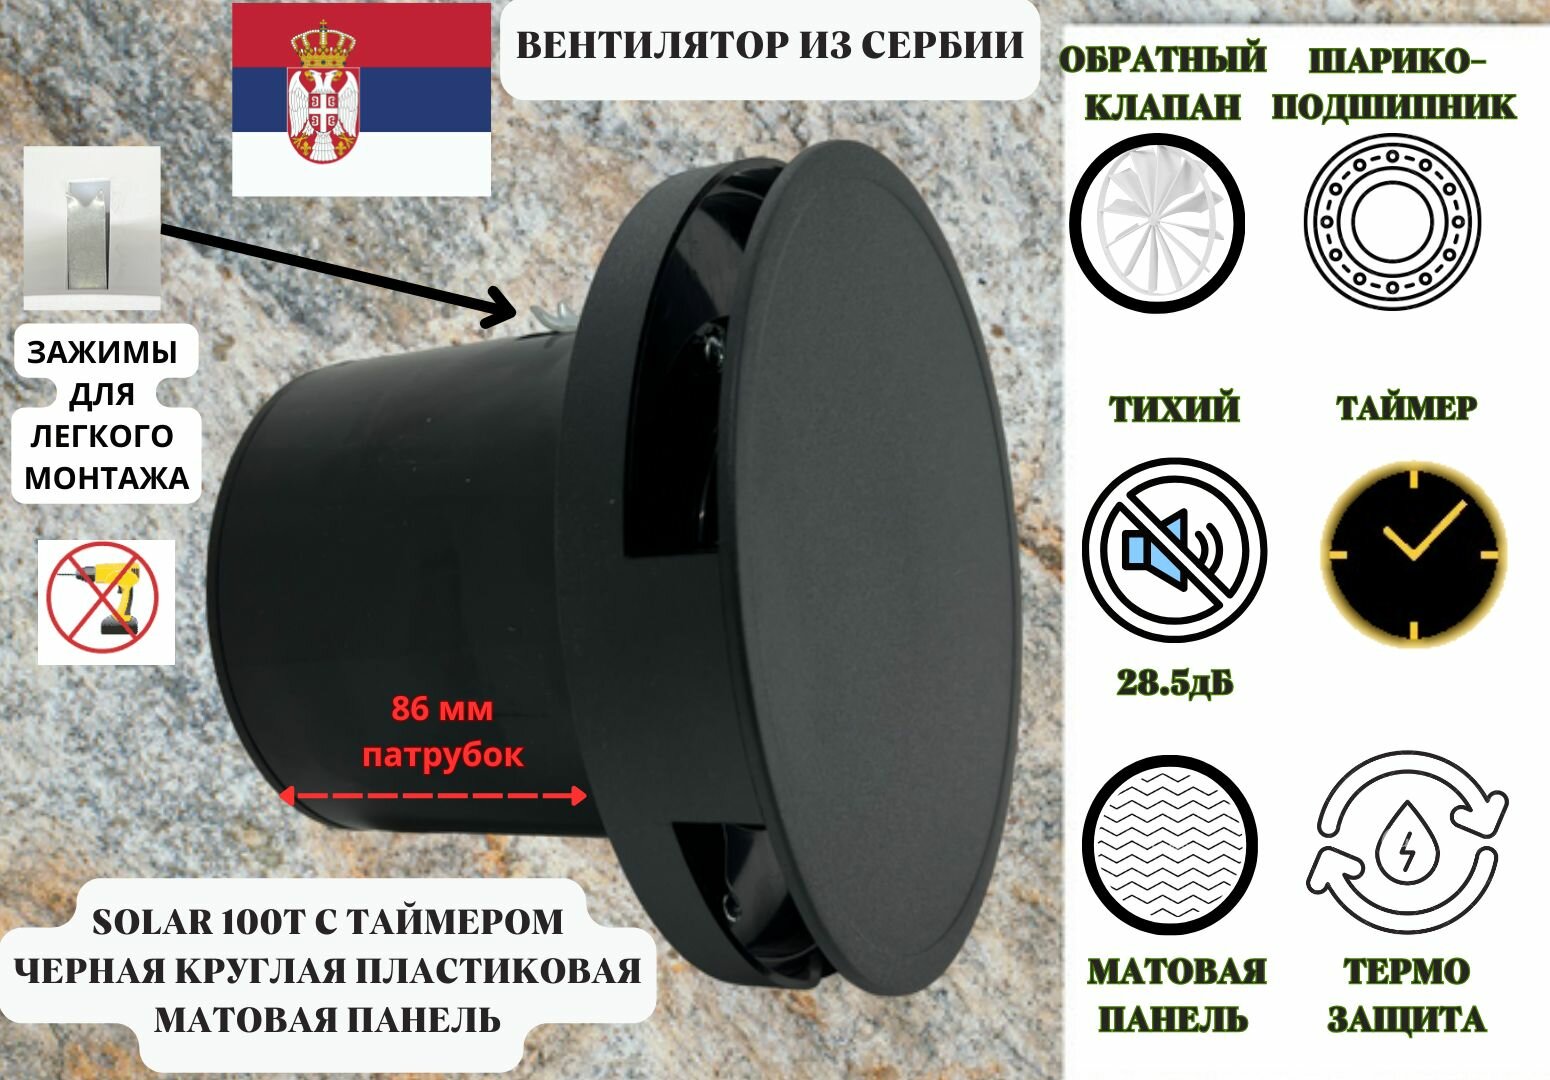 С таймером круглый малошумный (285дБ) вентилятор с обратным клапаном D100мм установка без сверления VENTFAN Solar100 черный матовый пластик Сербия